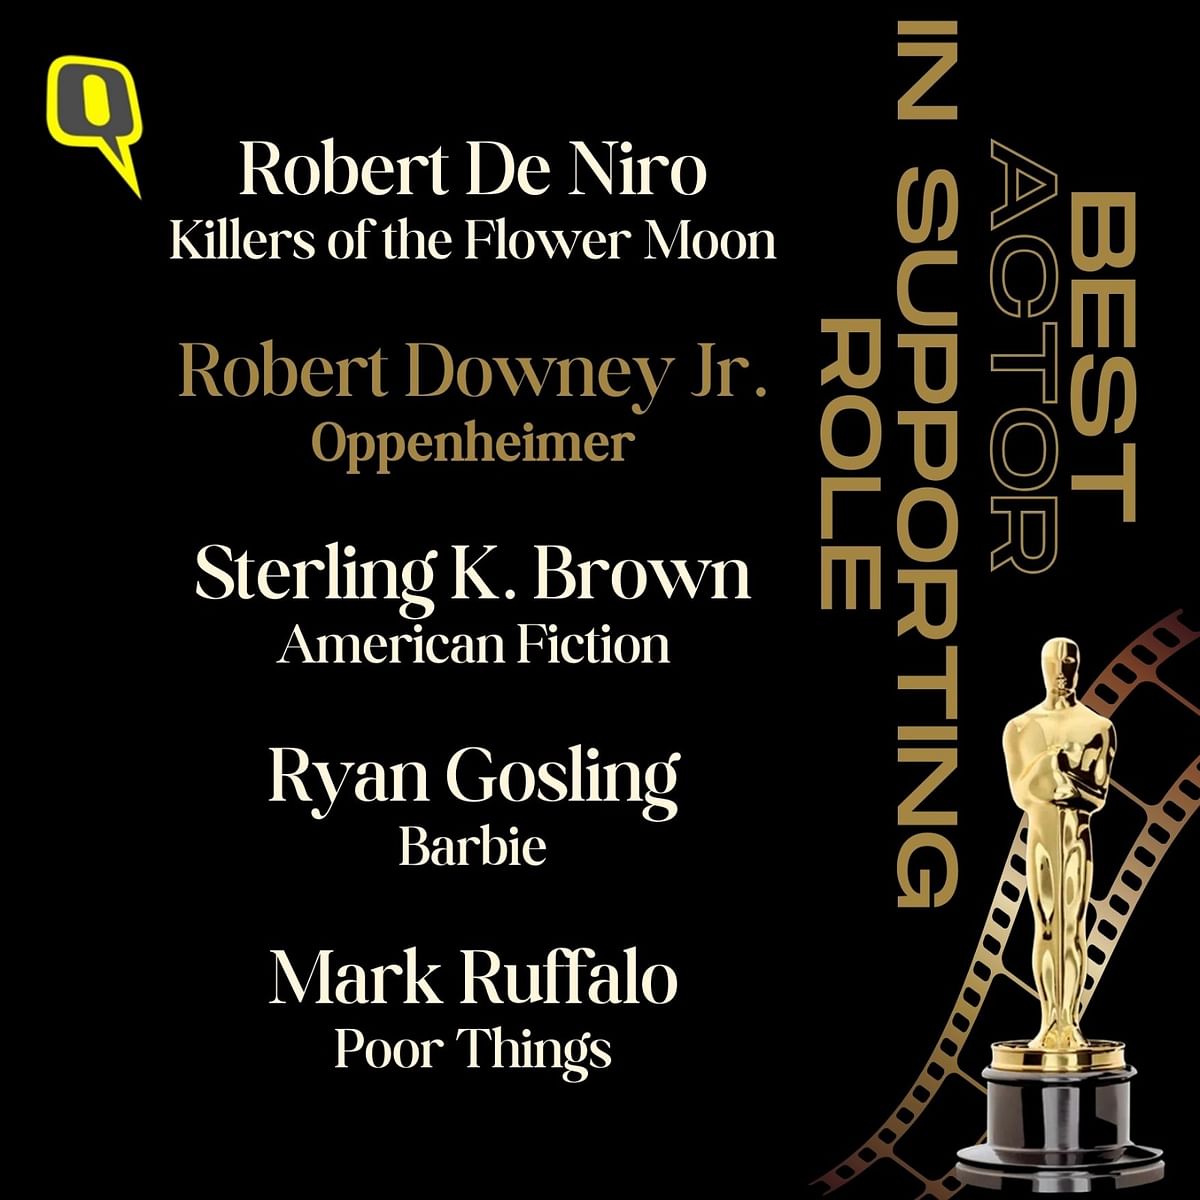 Cillian Murphy, Nolan and Robert Downey Jr won their first Oscars for Oppenheimer. 